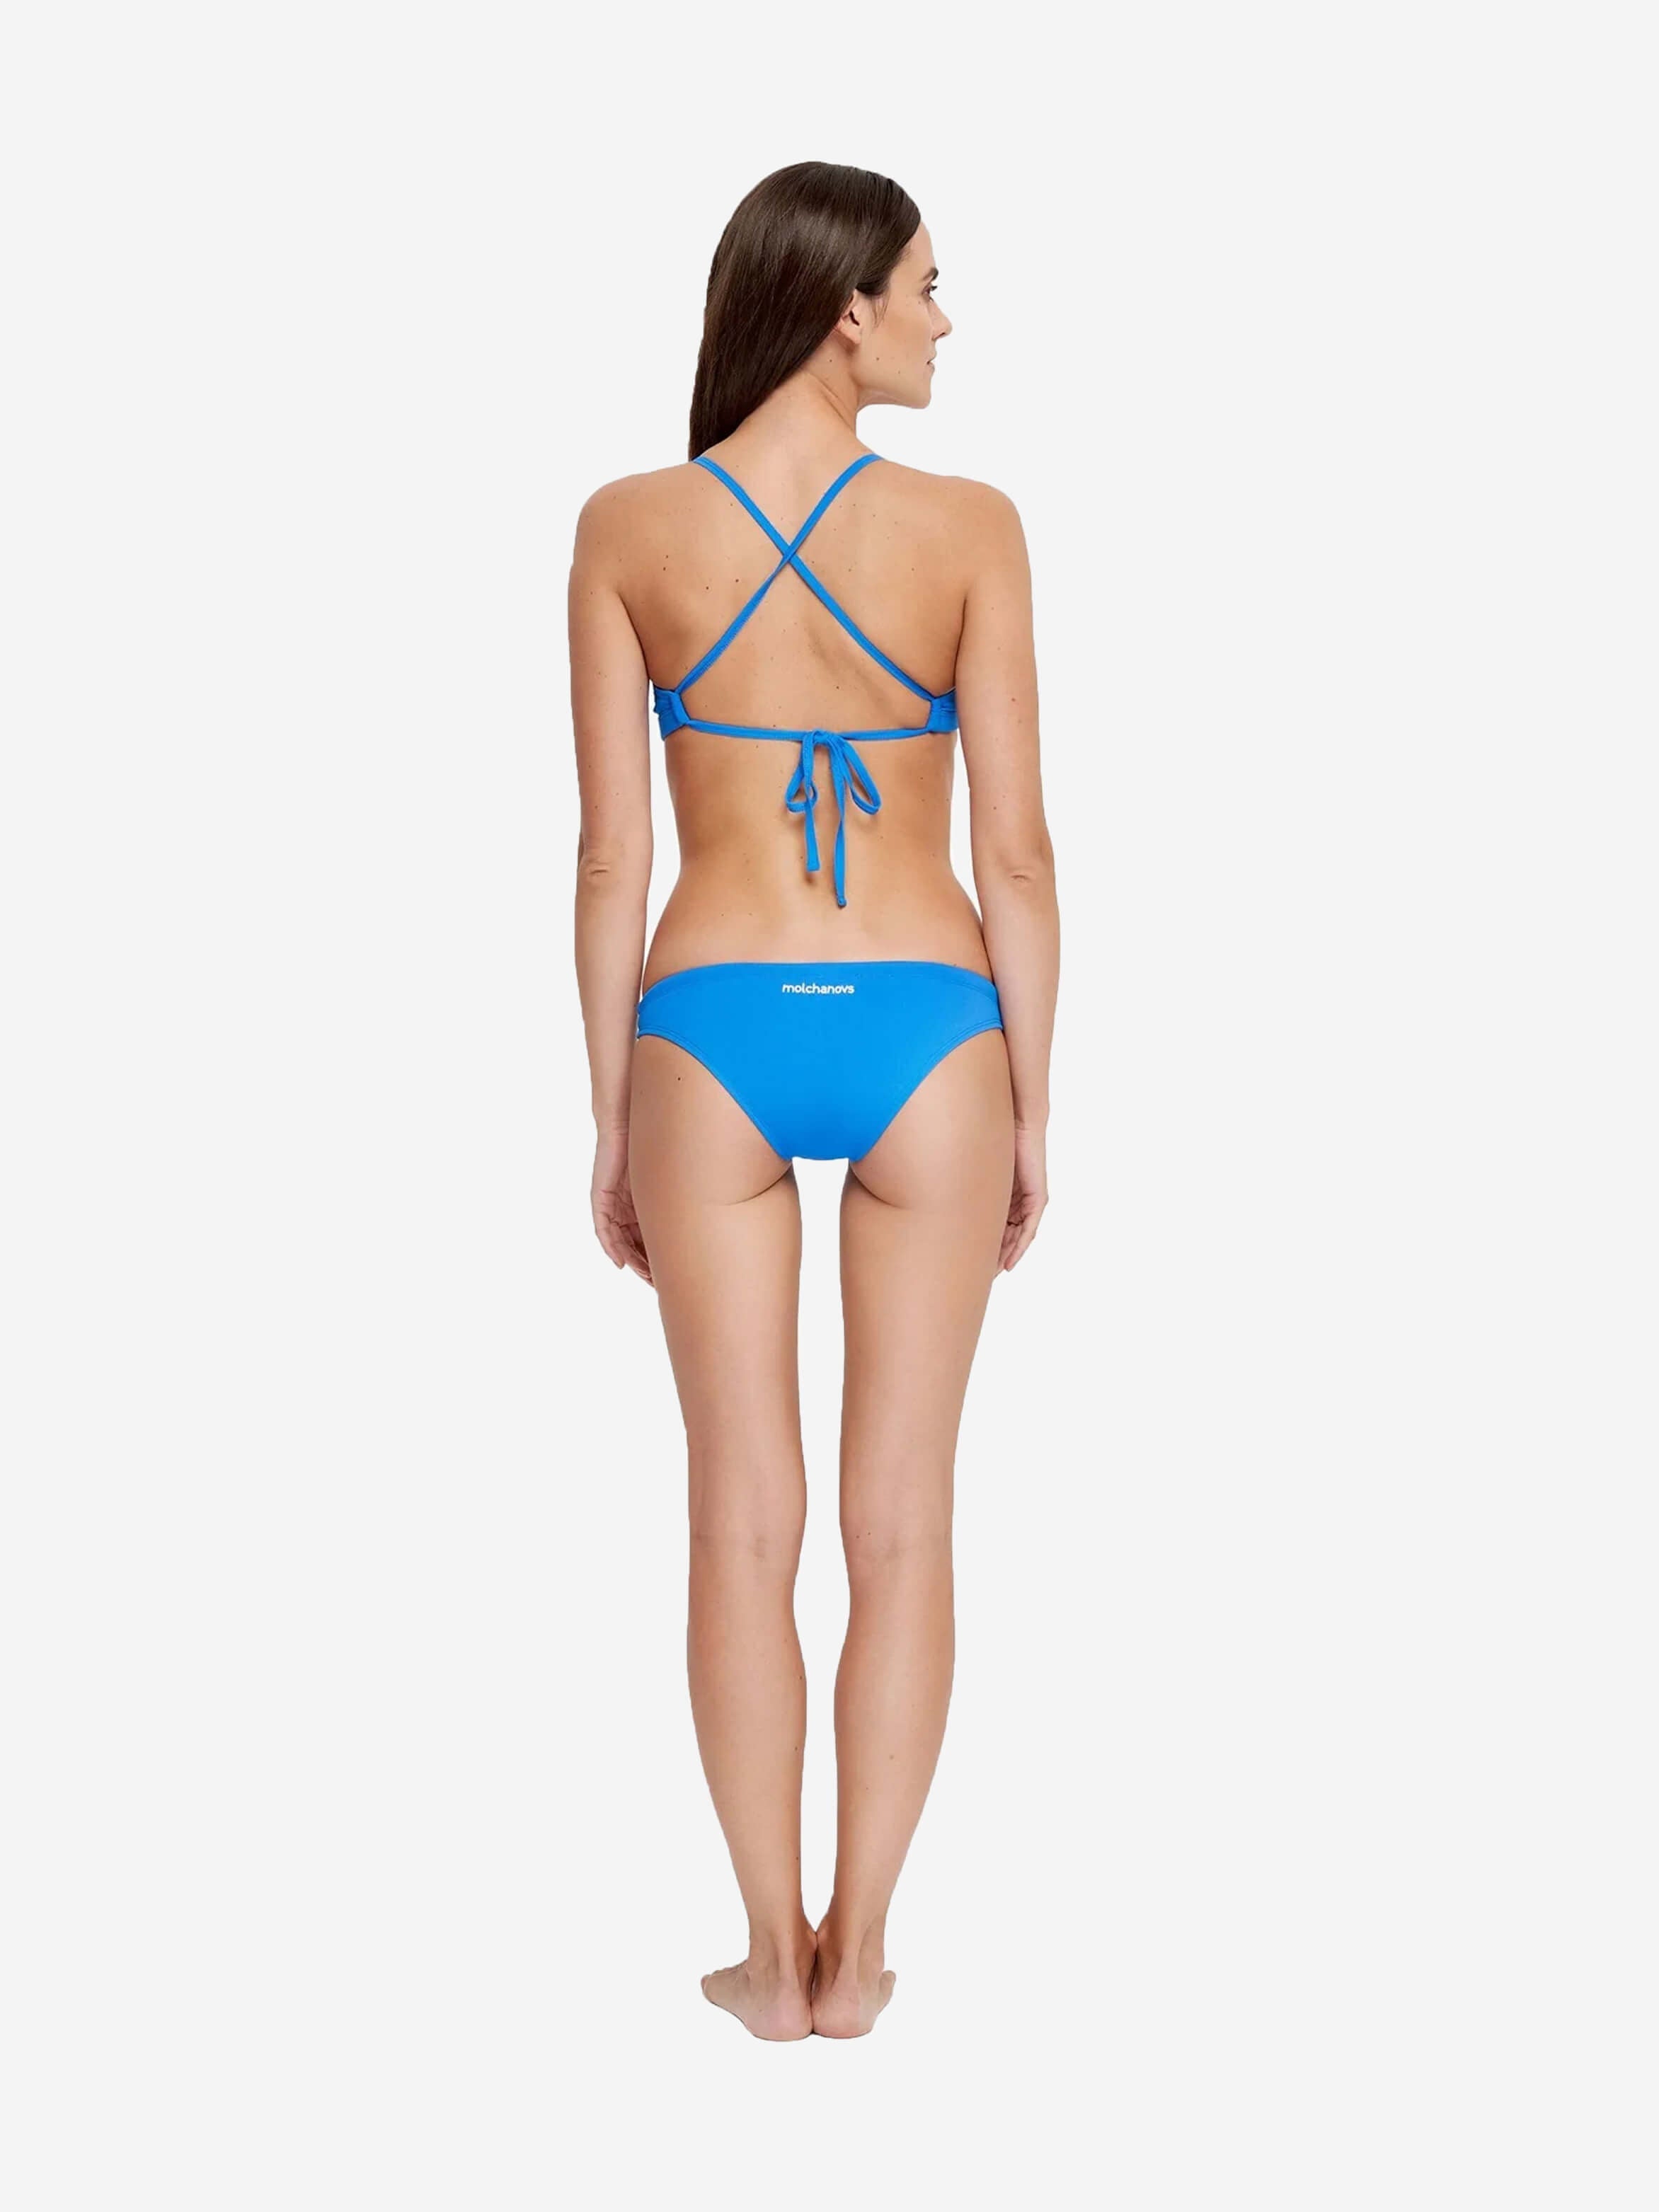 Women's Cross-Tie Back Bikini Top